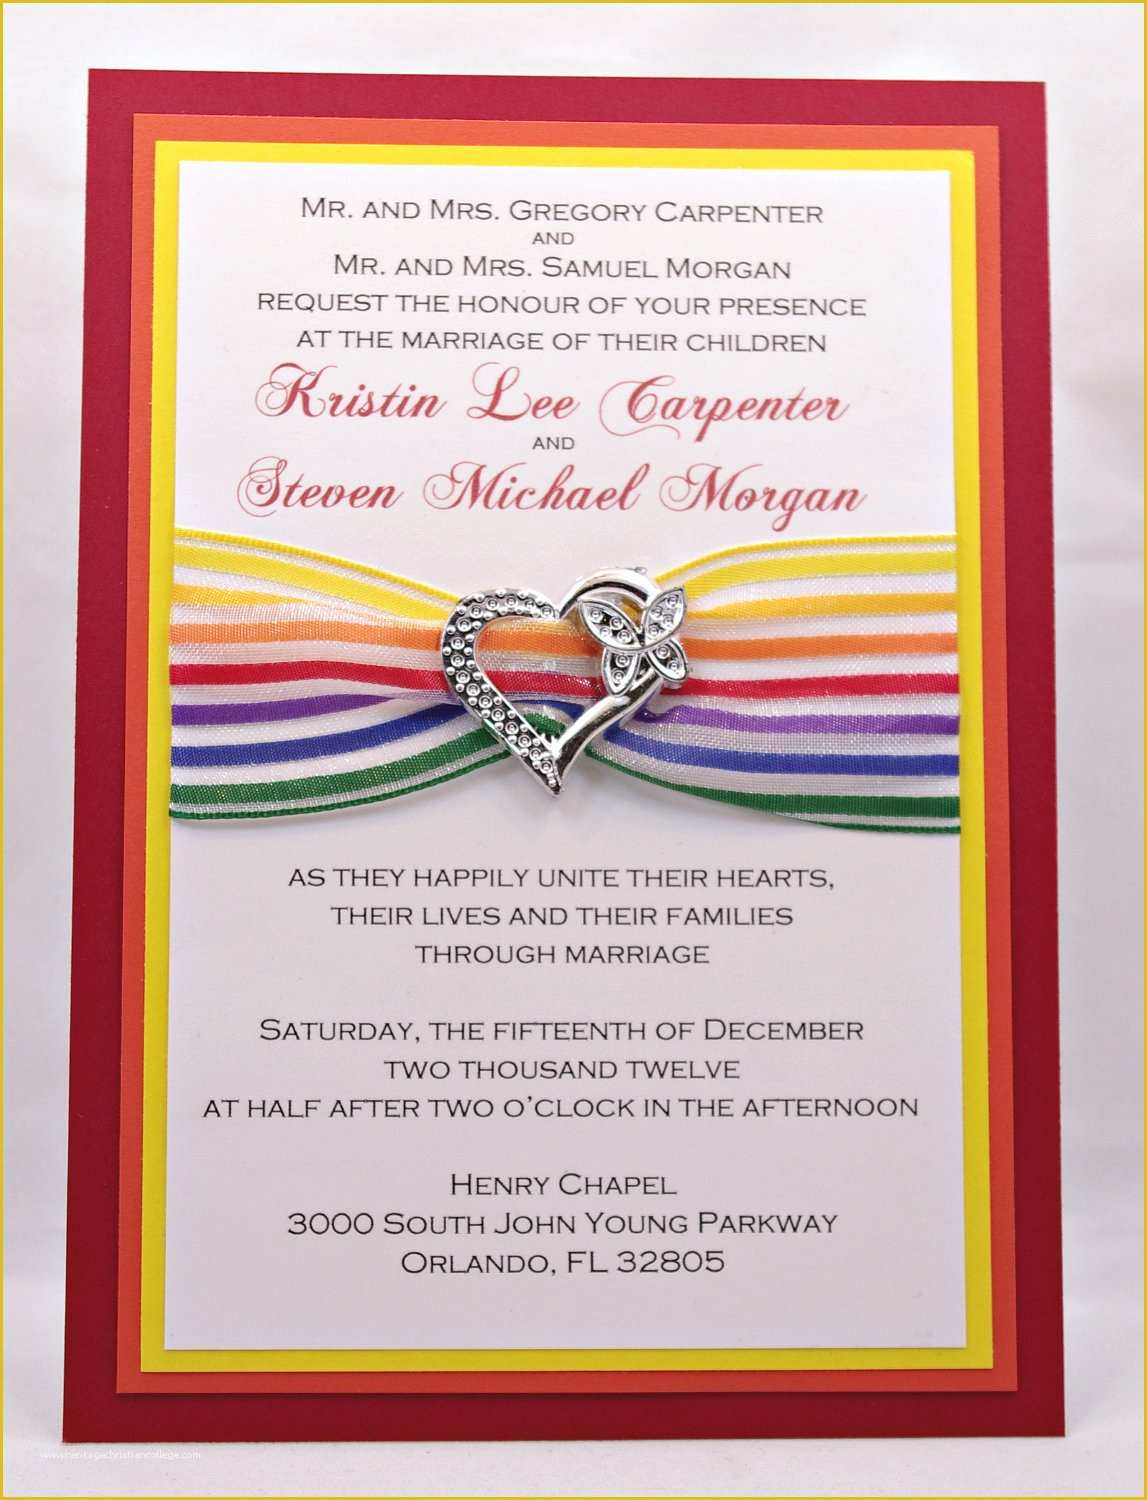 Rainbow Wedding Invitation Templates Free Of Fun and Cheery Rainbow Wedding Invitations with by Invitebling